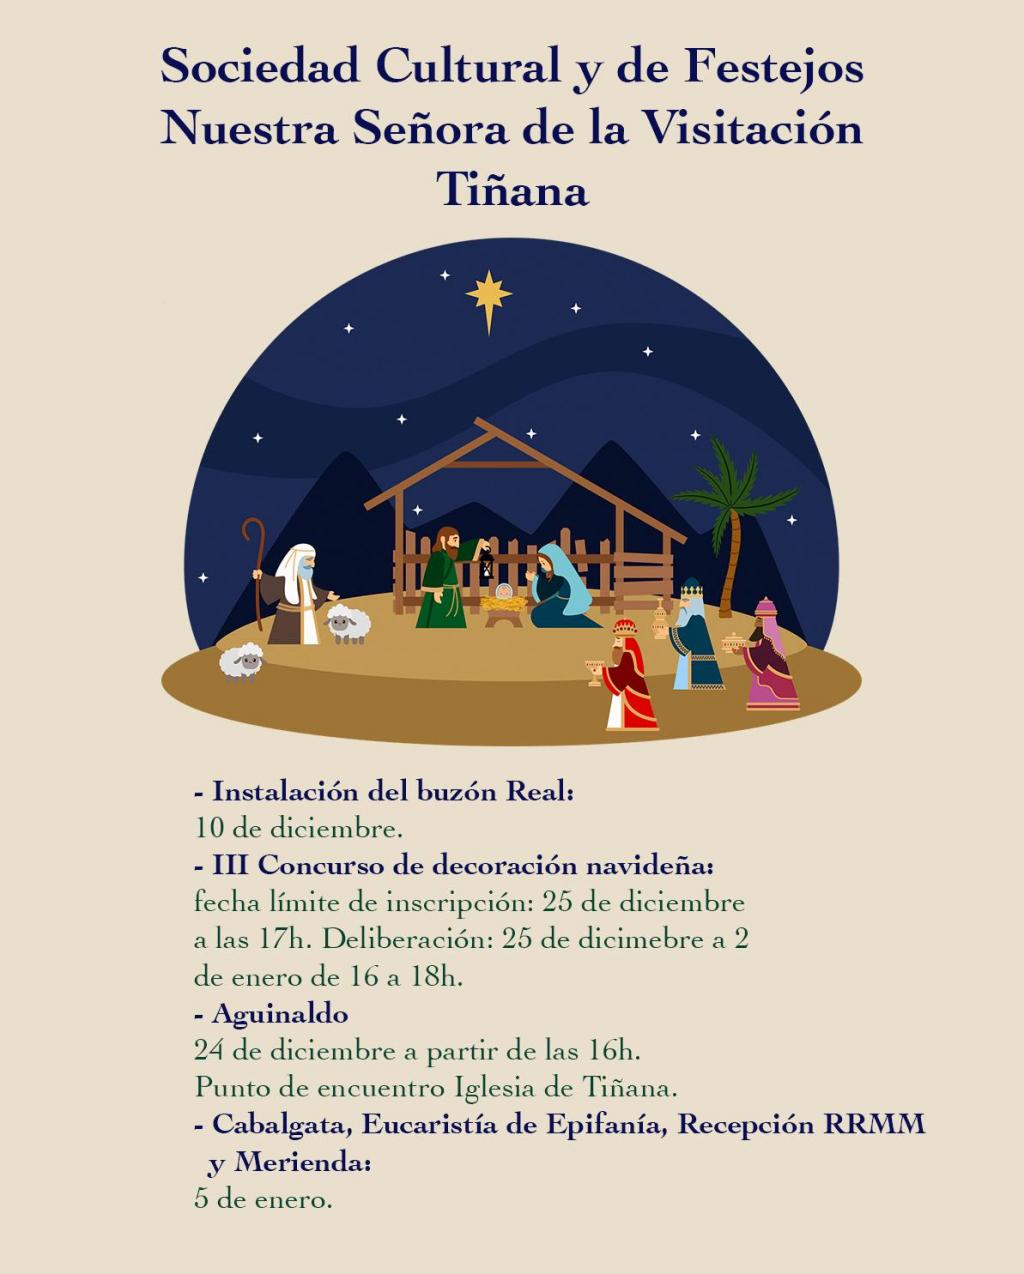 El Tapin - La Sociedad Cultural y de Festejos Nuestra Señora de la Visitación de Tiñana organiza varias actividades de cara a las Navidades